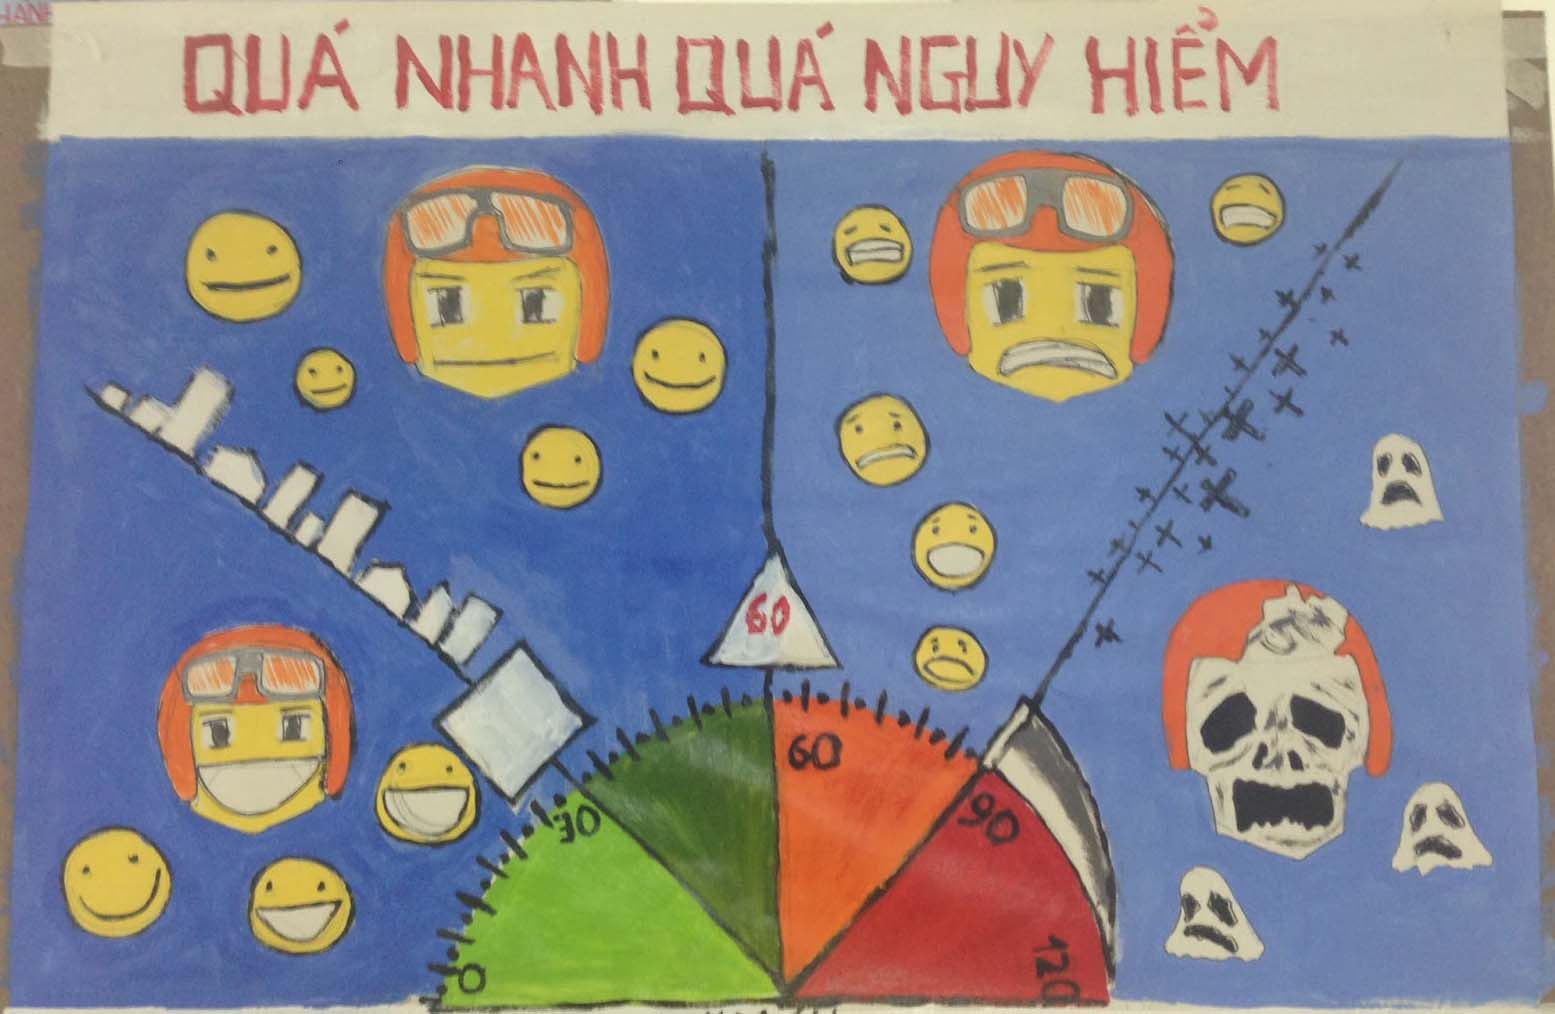 Tranh vẽ của học sinh về an toàn giao thông